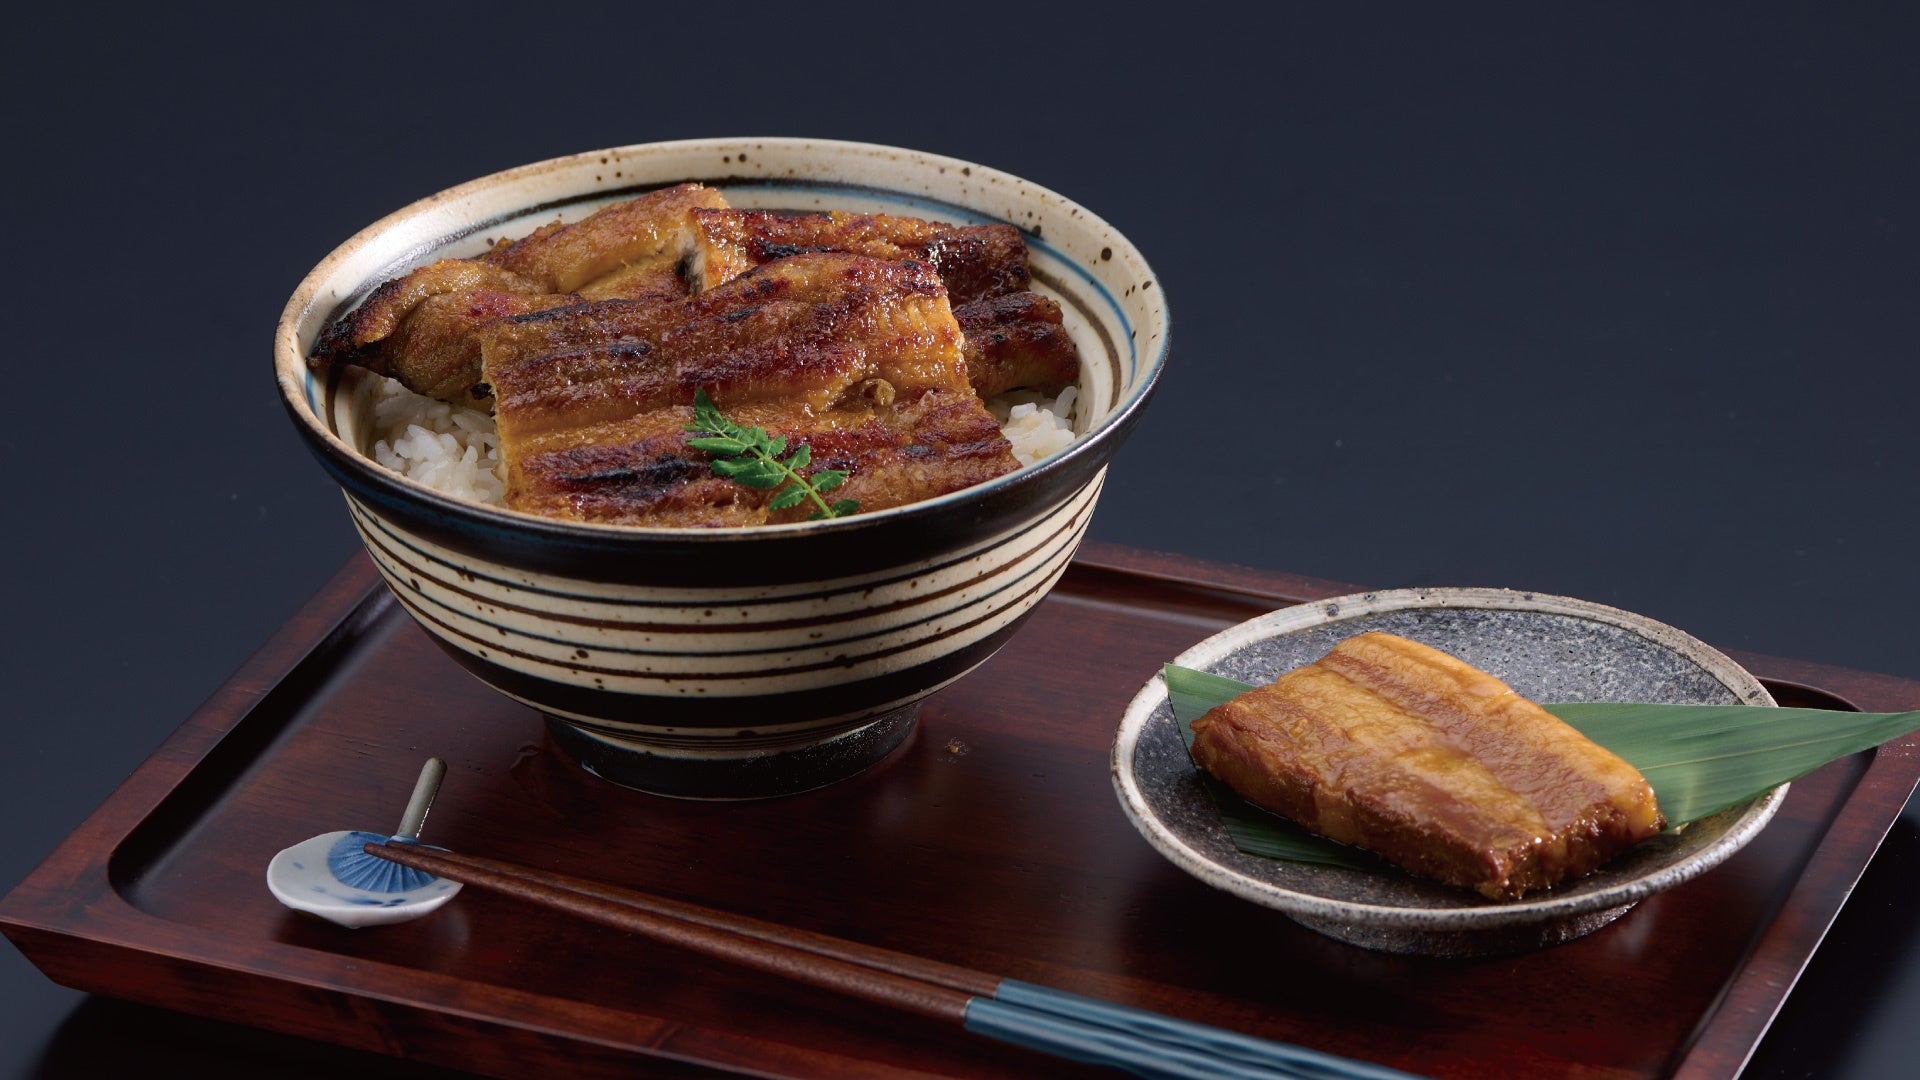 兵庫県福崎町の相沢食産、7つの食材を使った新作納豆シリーズ「特選NATTOシリーズ」を発表